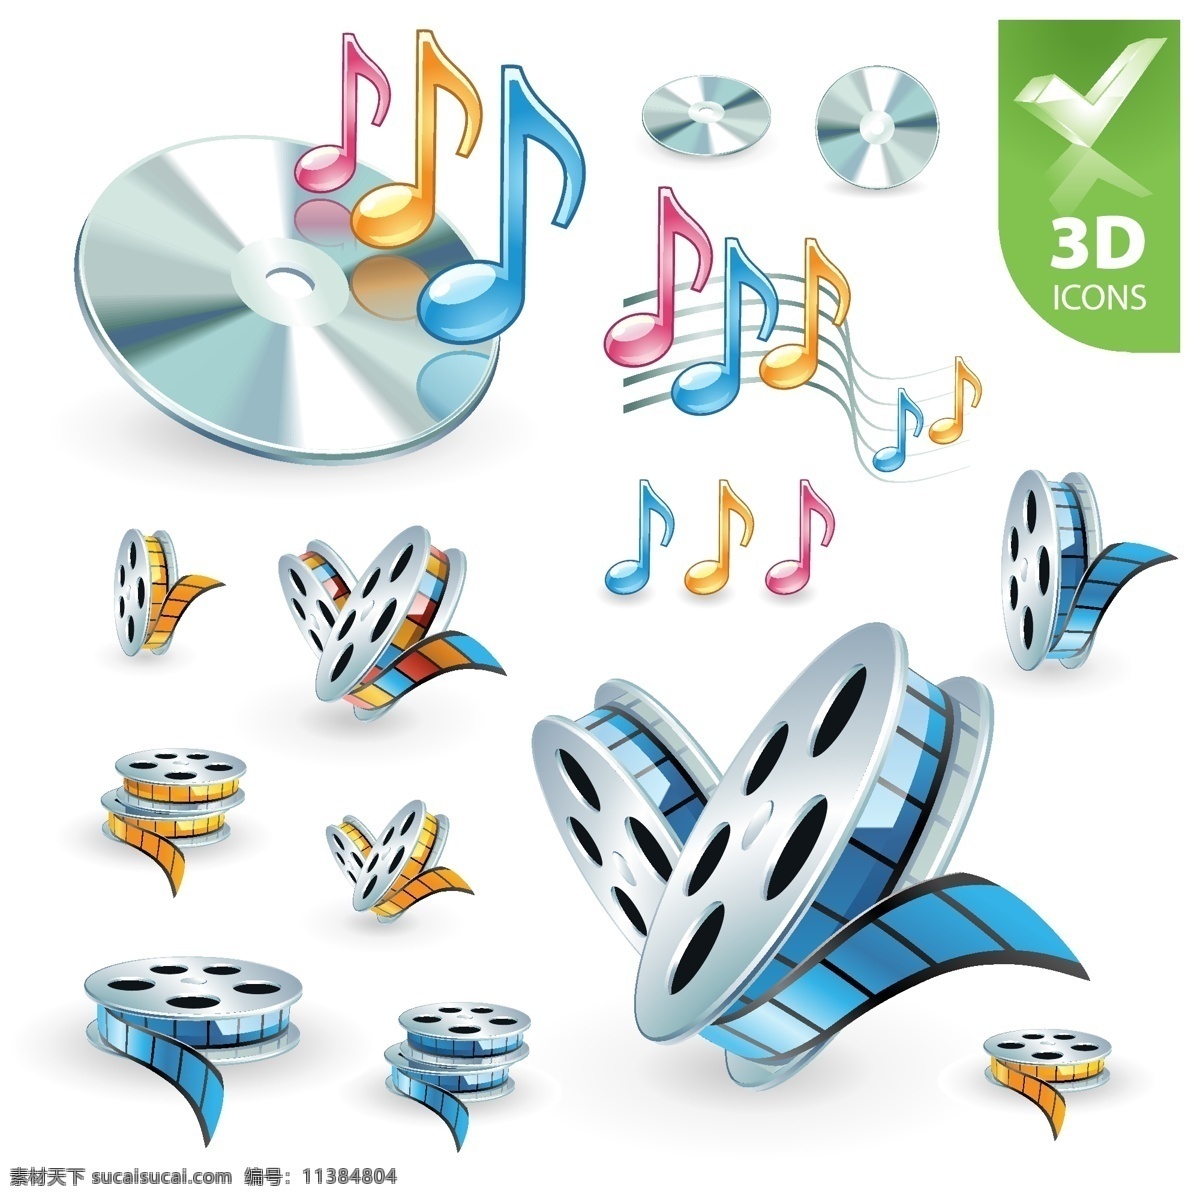 3d 音频视频 图标 矢量 cd 笔记 材料 电影 盘 视频 音乐 音频 高质感的电影 音响 矢量图 其他矢量图